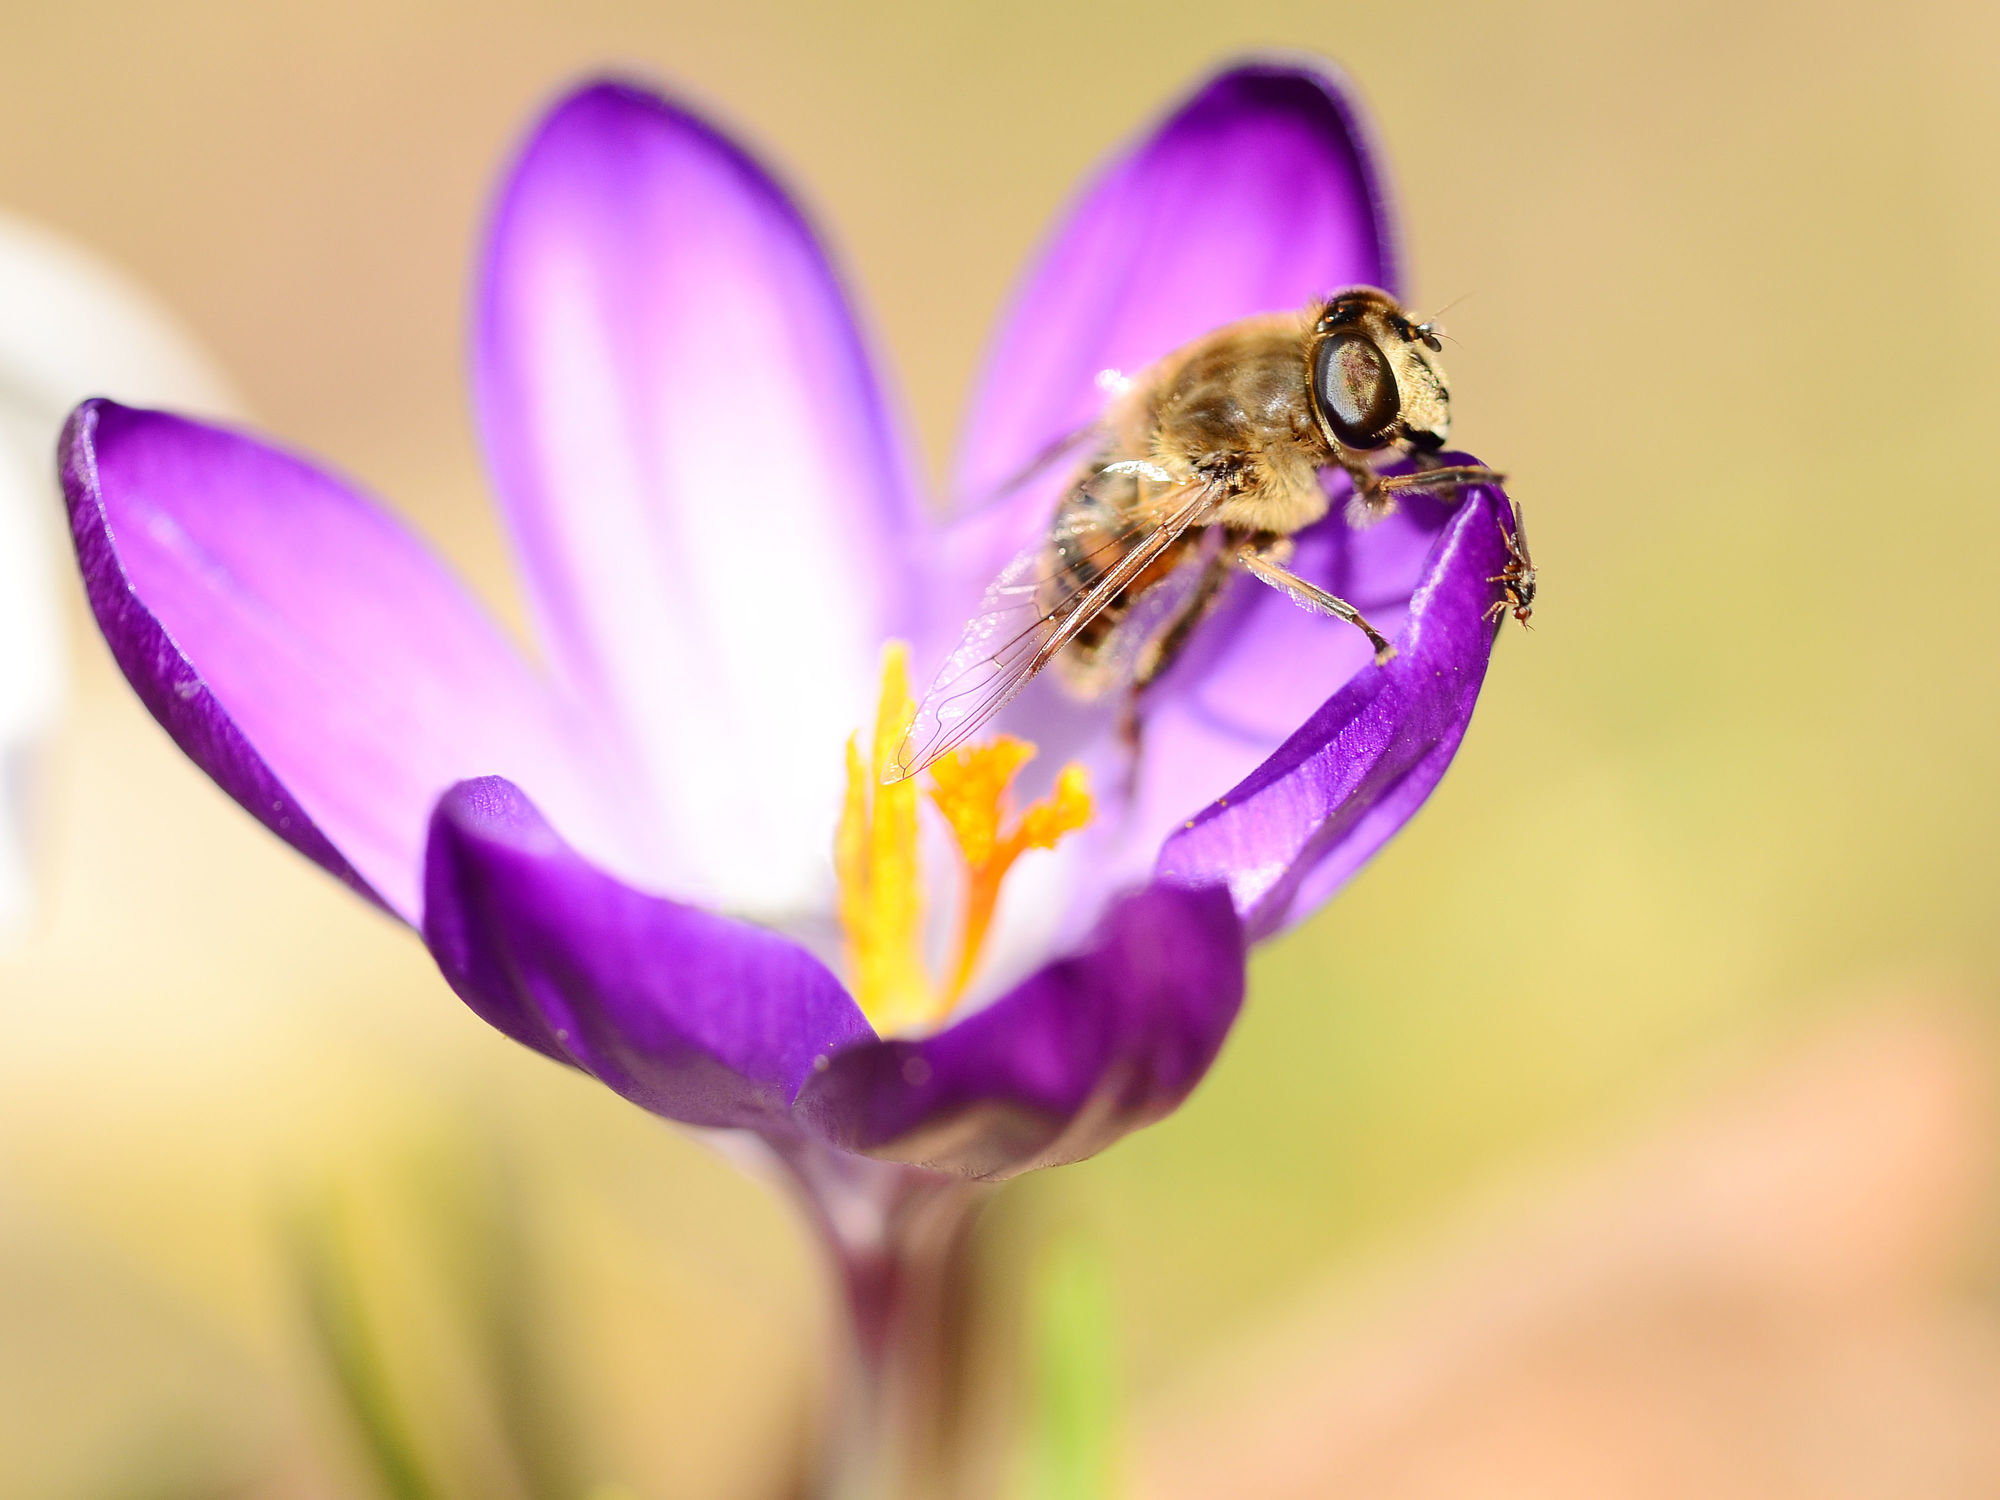 Bild mit Tiere, Frühling, Insekten, Bienen, Fliegen, Sonne, Licht, Krokusse, frühjahr, Wärme, Tierwelt, Biene, Honig, Honigbiene